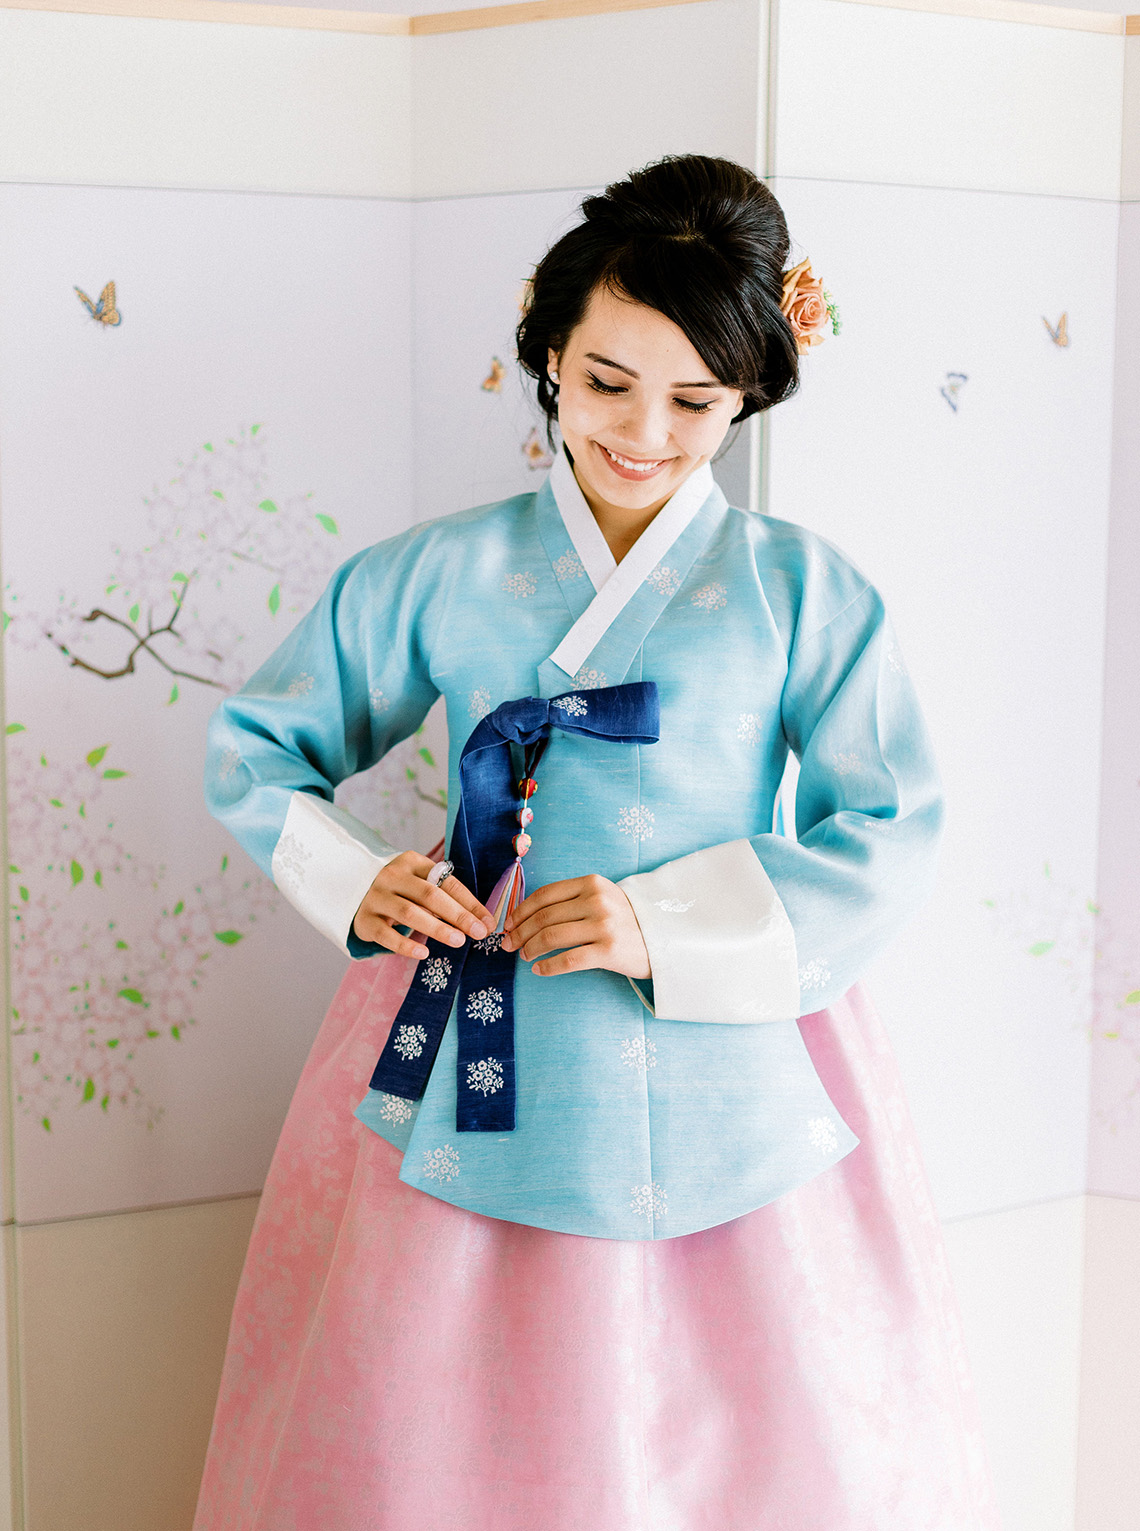 Modern Korean Wedding Inspiration lilelements Anadena Photography 85 - 15 chiếc váy cưới Hanbok Hàn Quốc tuyệt đẹp và hiện đại